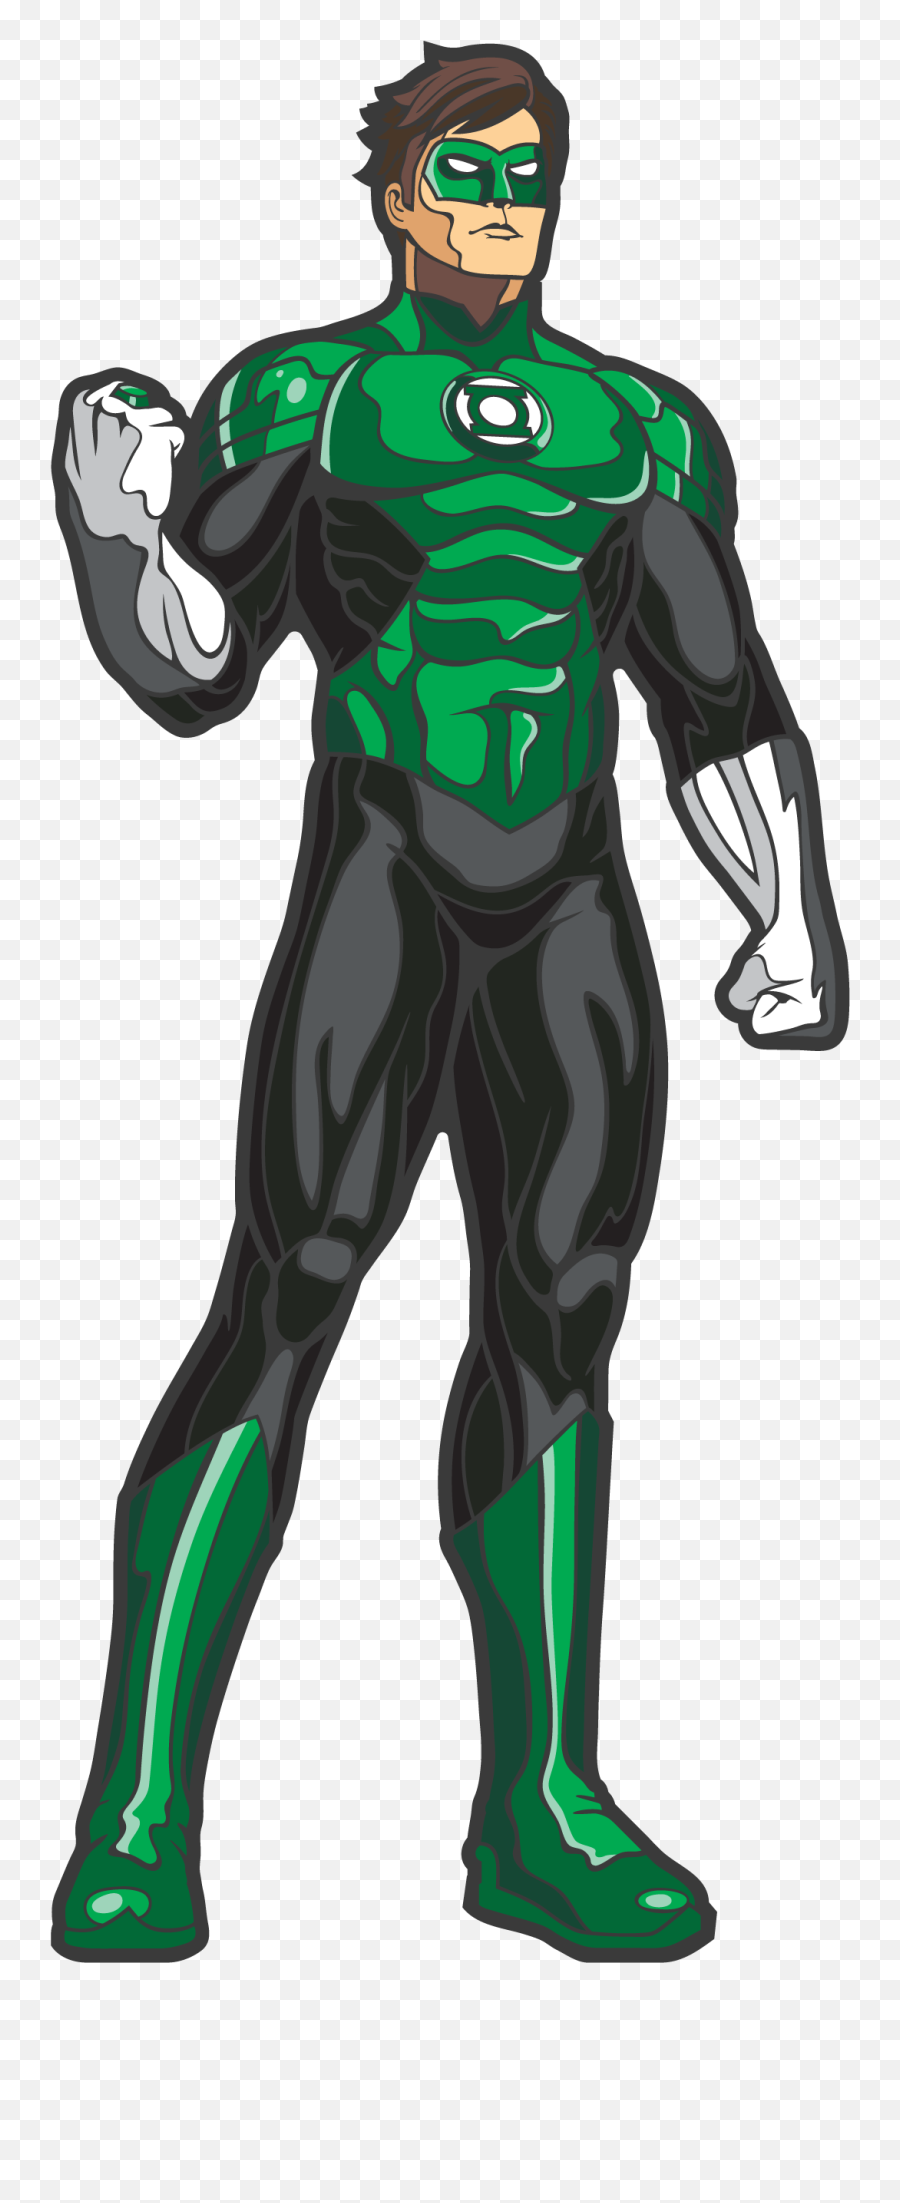 Green Lantern - Green Lantern Drawing Cartoon Png,Green Lantern Transparent